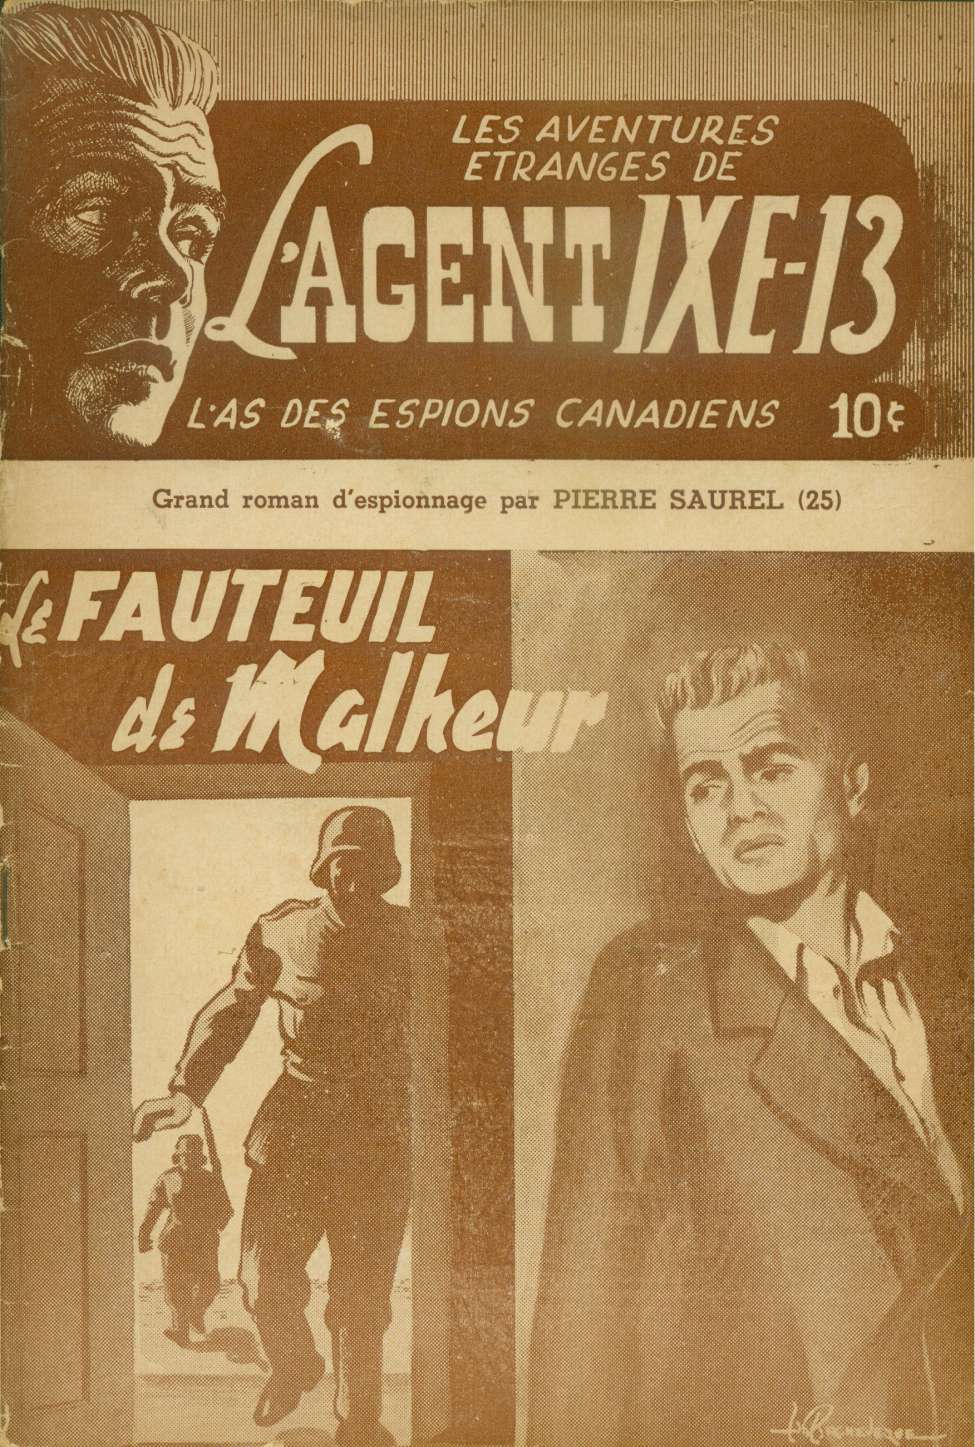 Comic Book Cover For L'Agent IXE-13 v2 25 - Le fauteuil de malheur